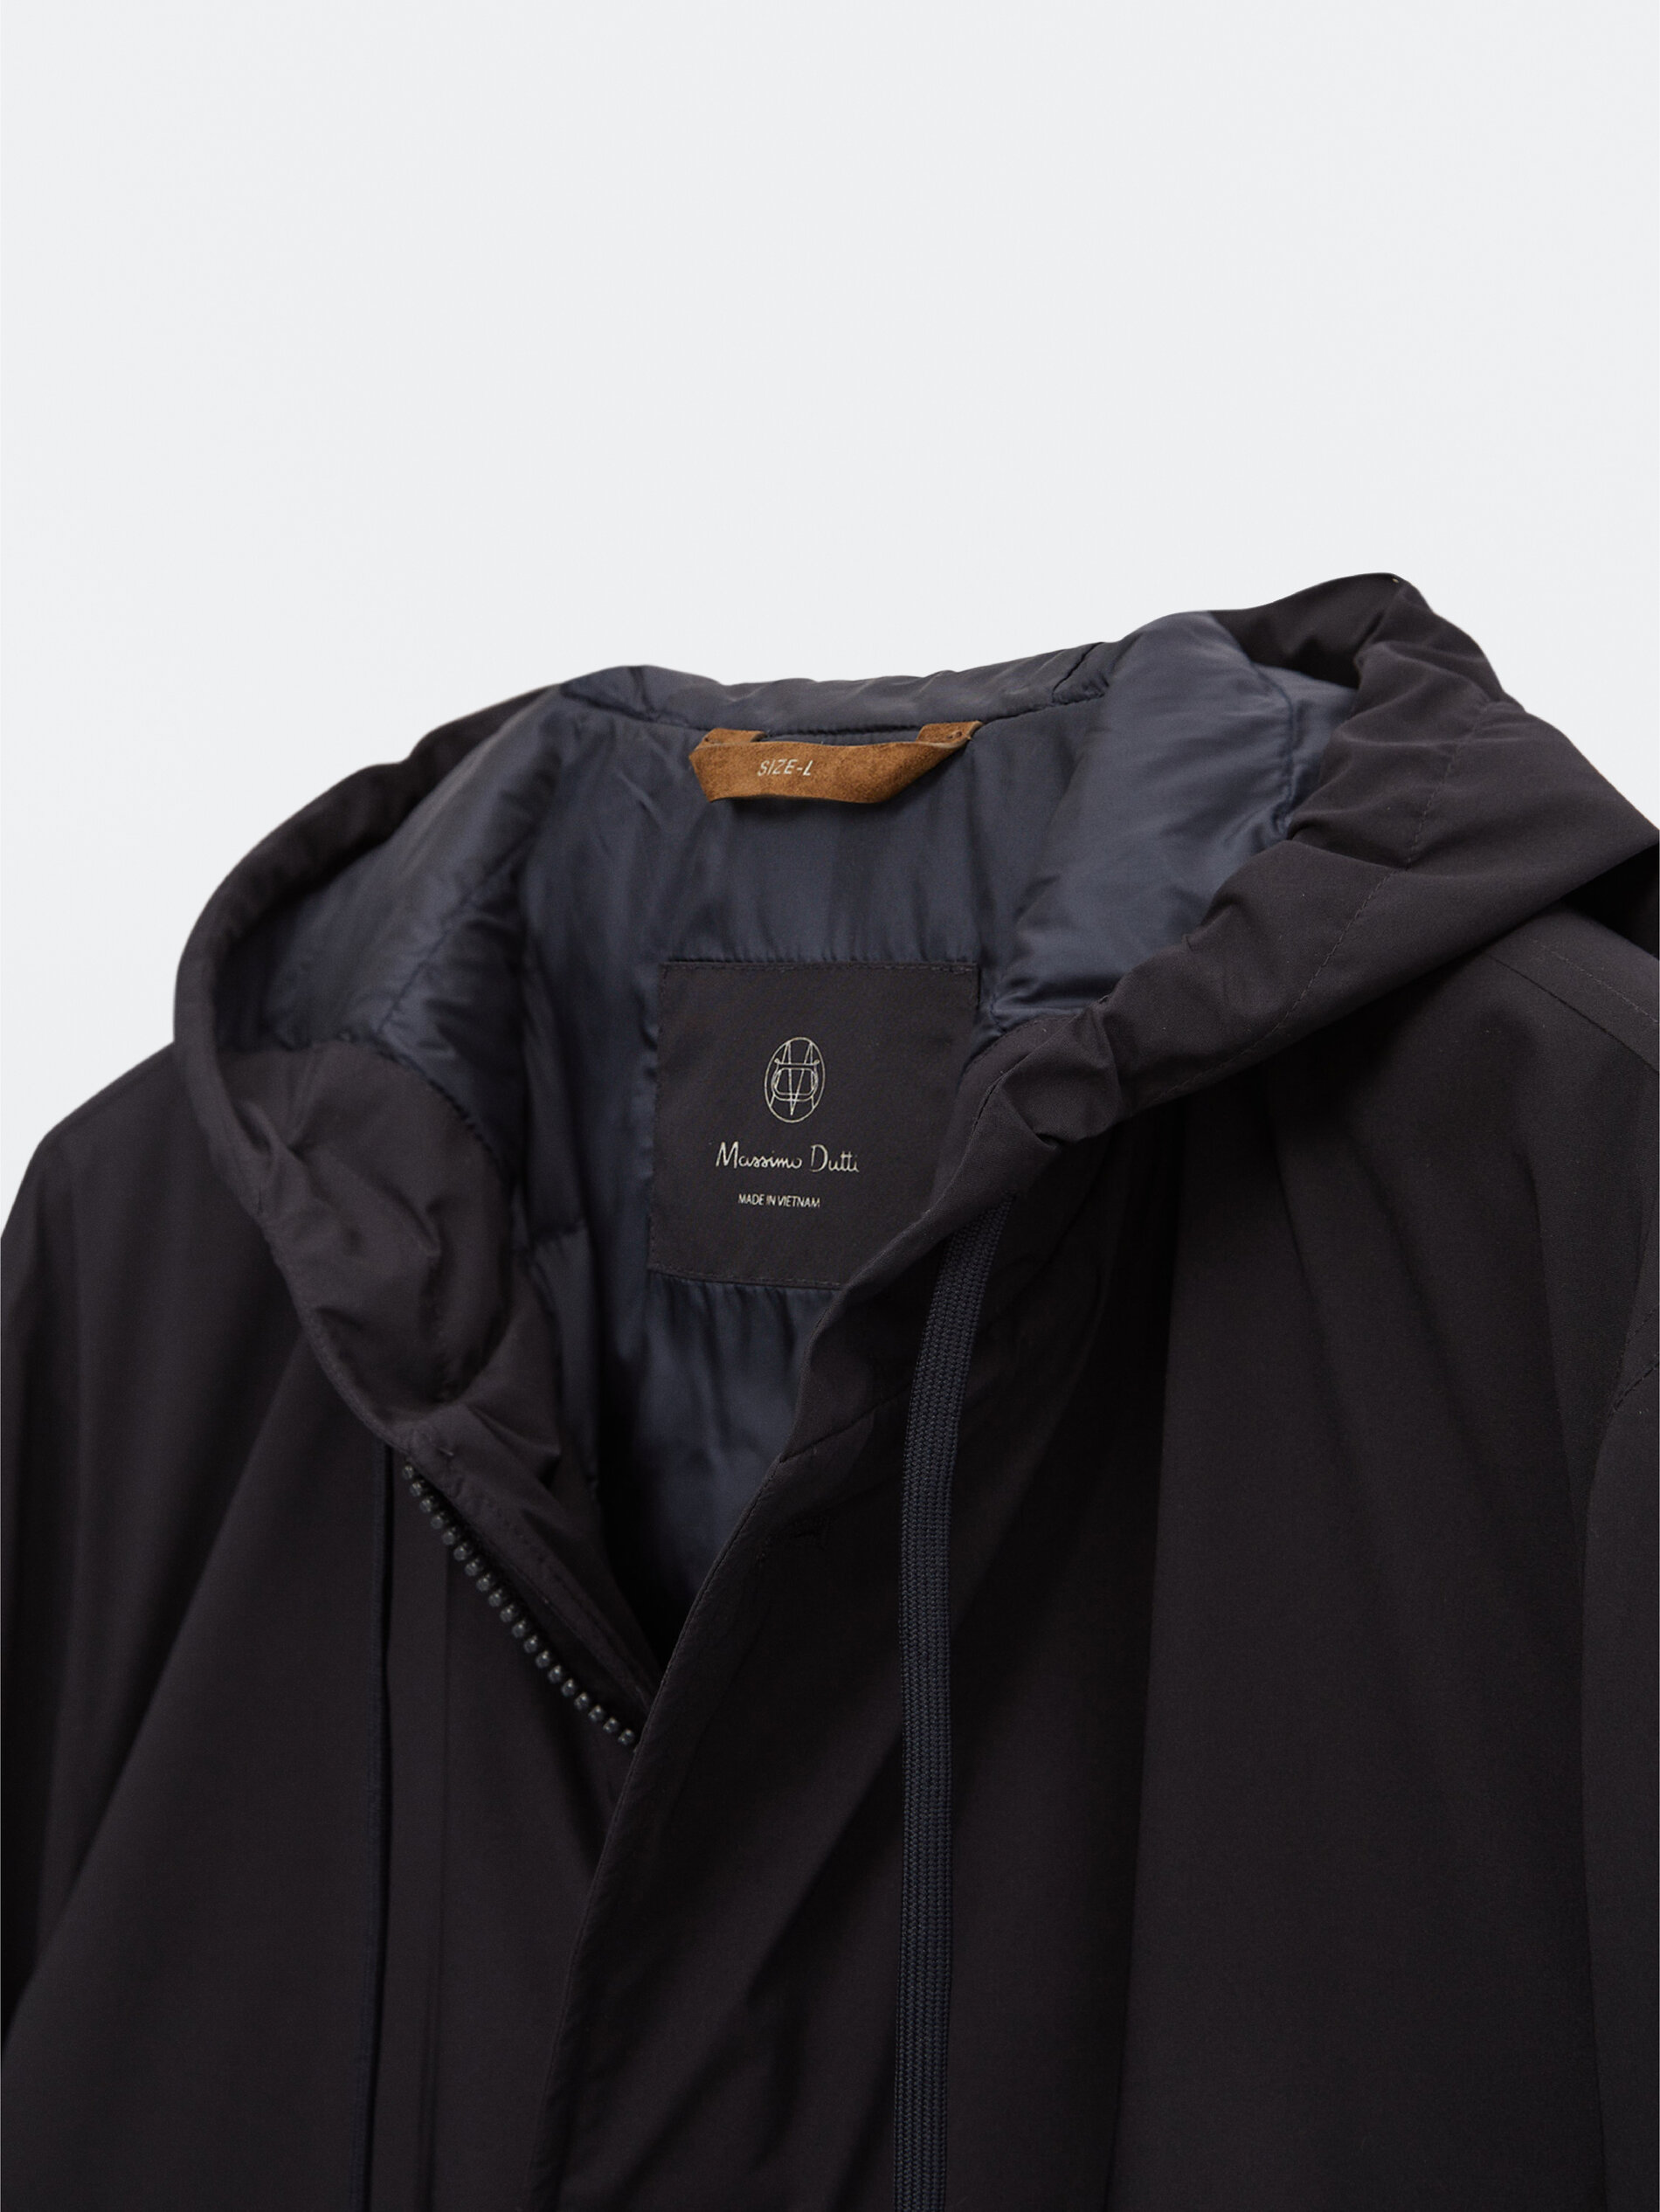 499710108599XL Micro Fleece Jacket Size XL In Cornflower Blue/Black 